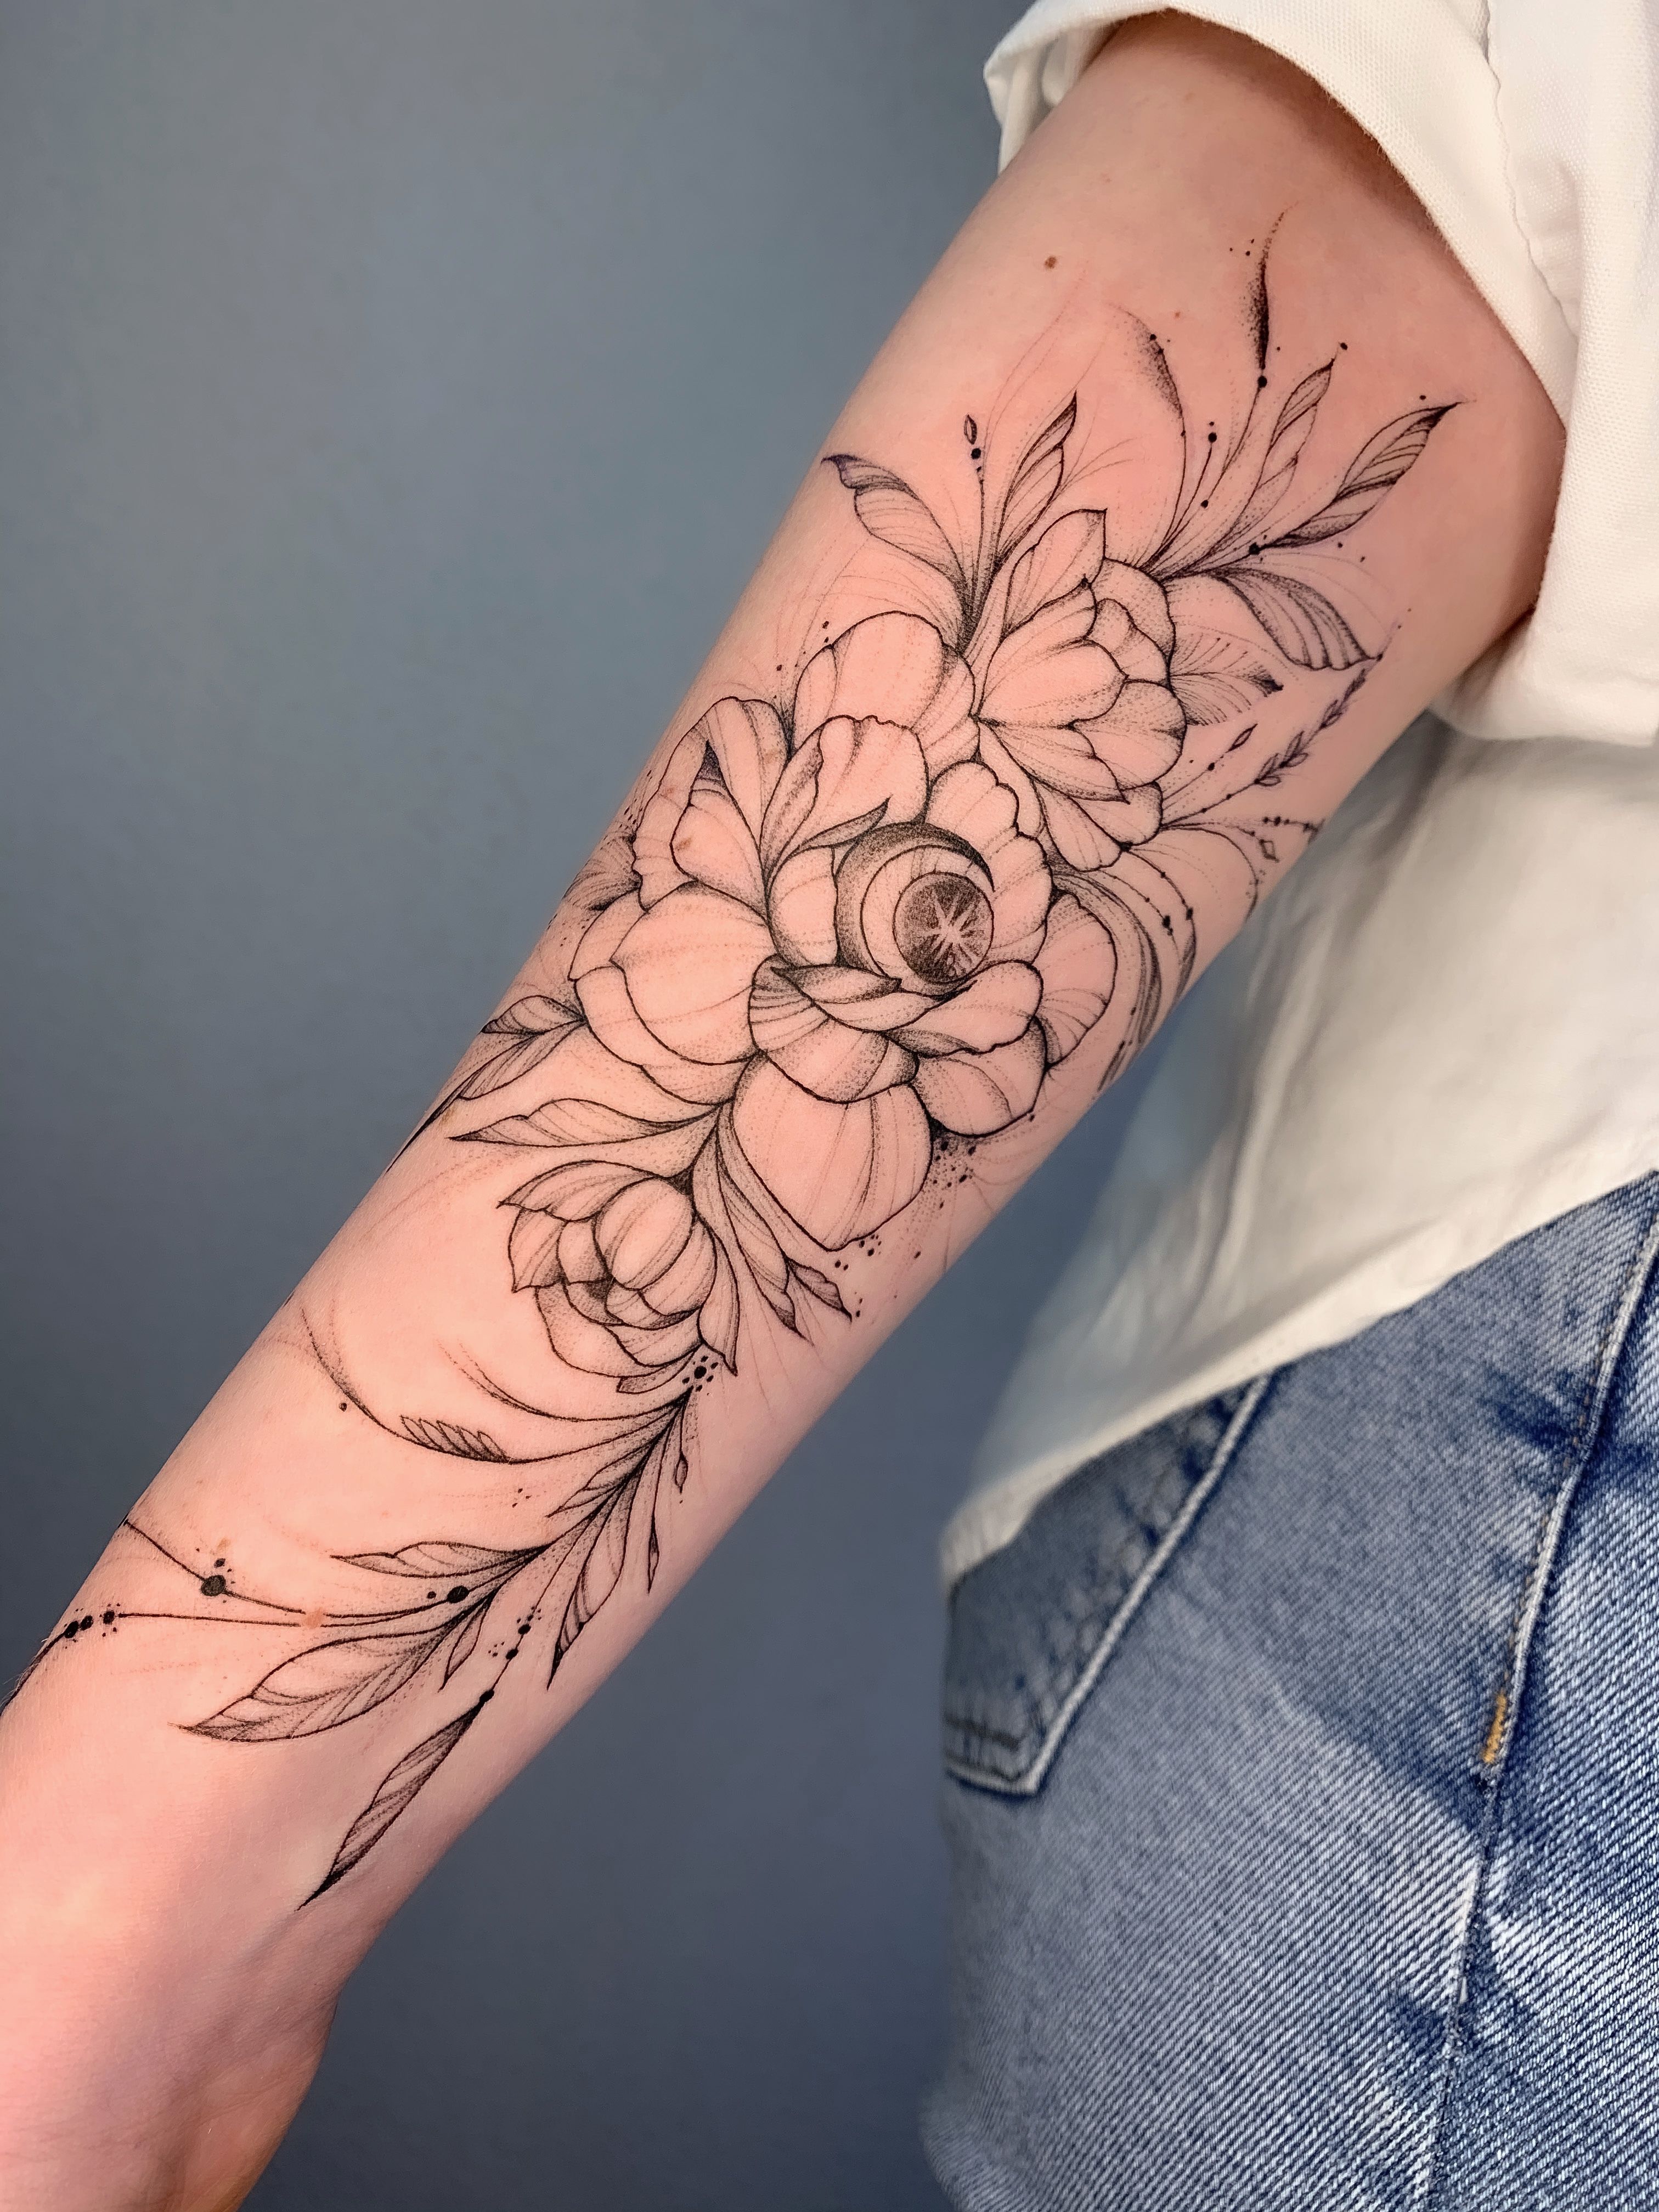 Flower Arm Tattoo - Best Tattoo Ideas Gallery